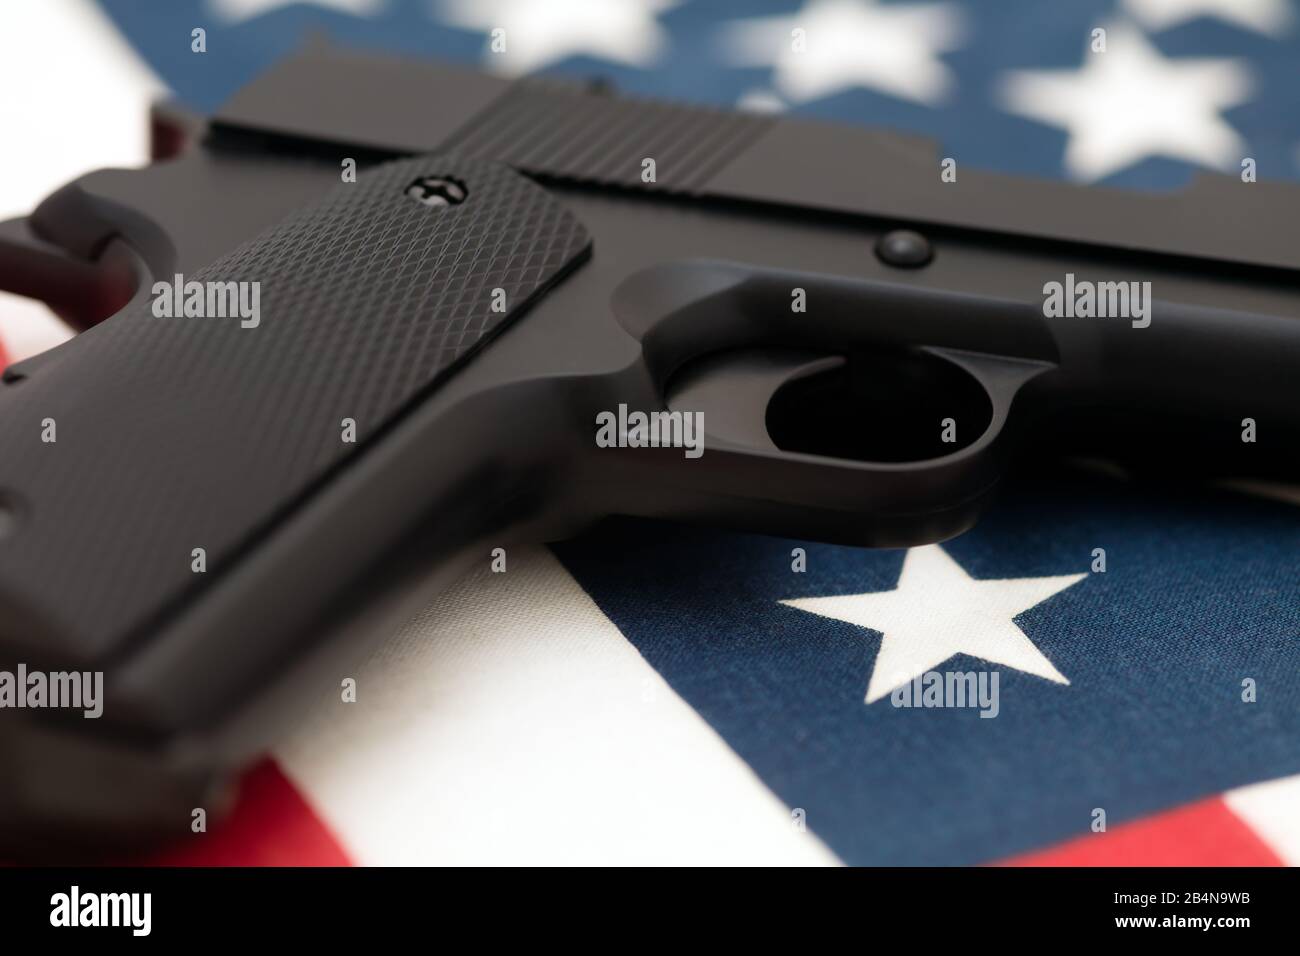 Halbautomatische Pistole auf amerikanischer Flagge. Konzept der amerikanischen Waffenkultur, die zweite Änderung und das Recht, Waffen in den USA zu tragen. Stockfoto